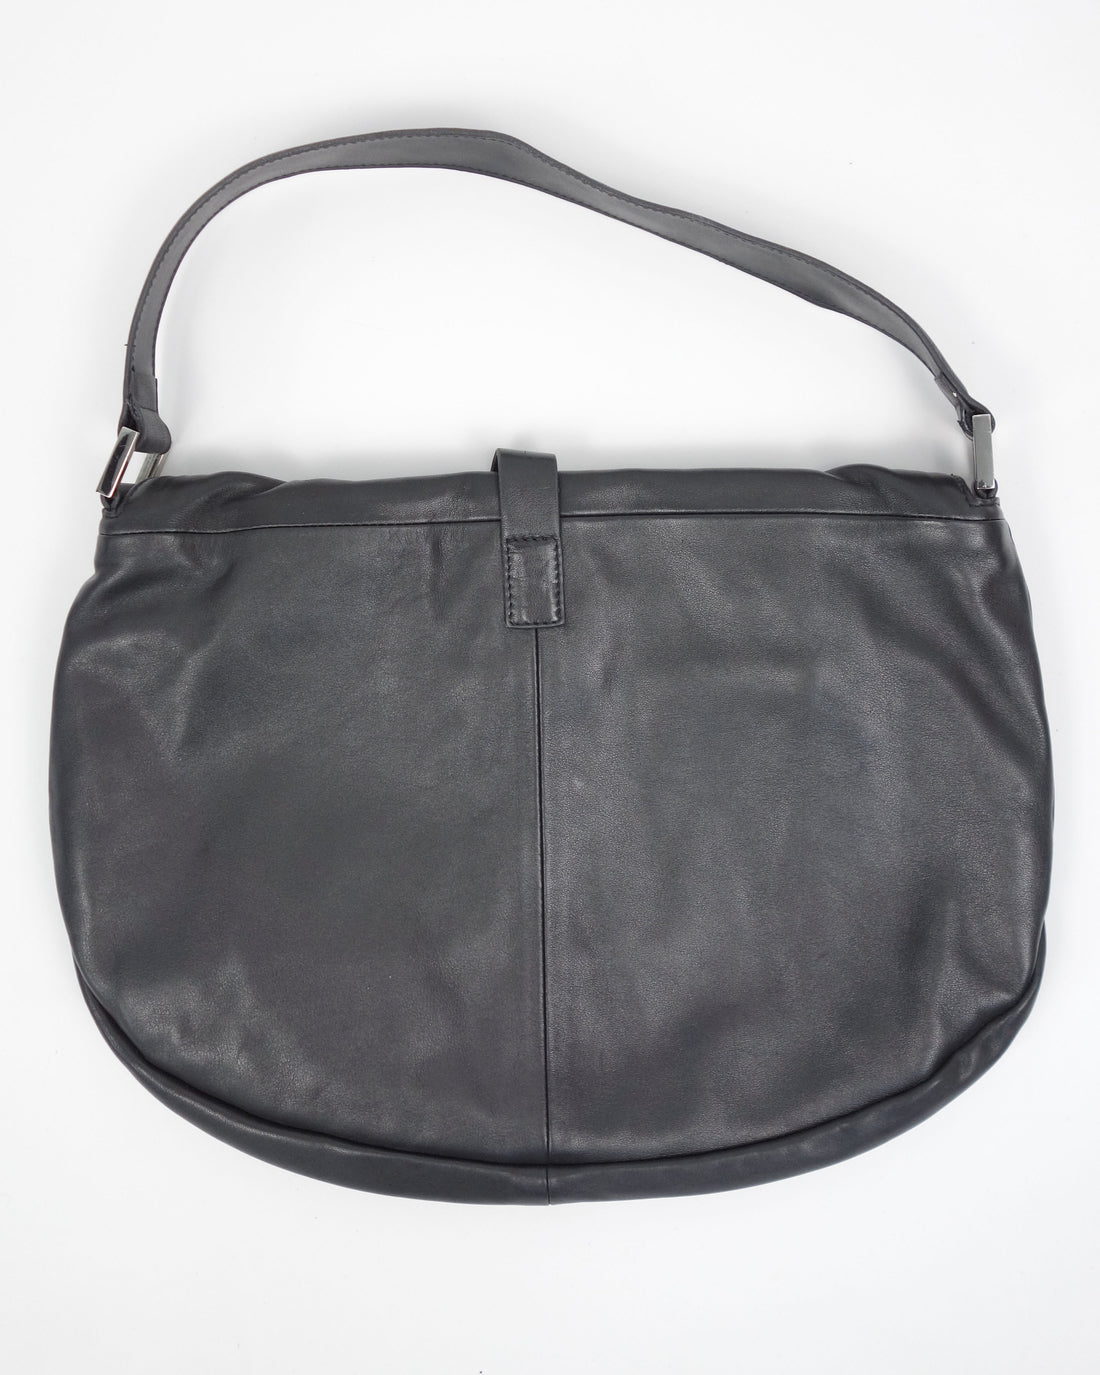 Mugler Black Leather Soft Bag 2000's